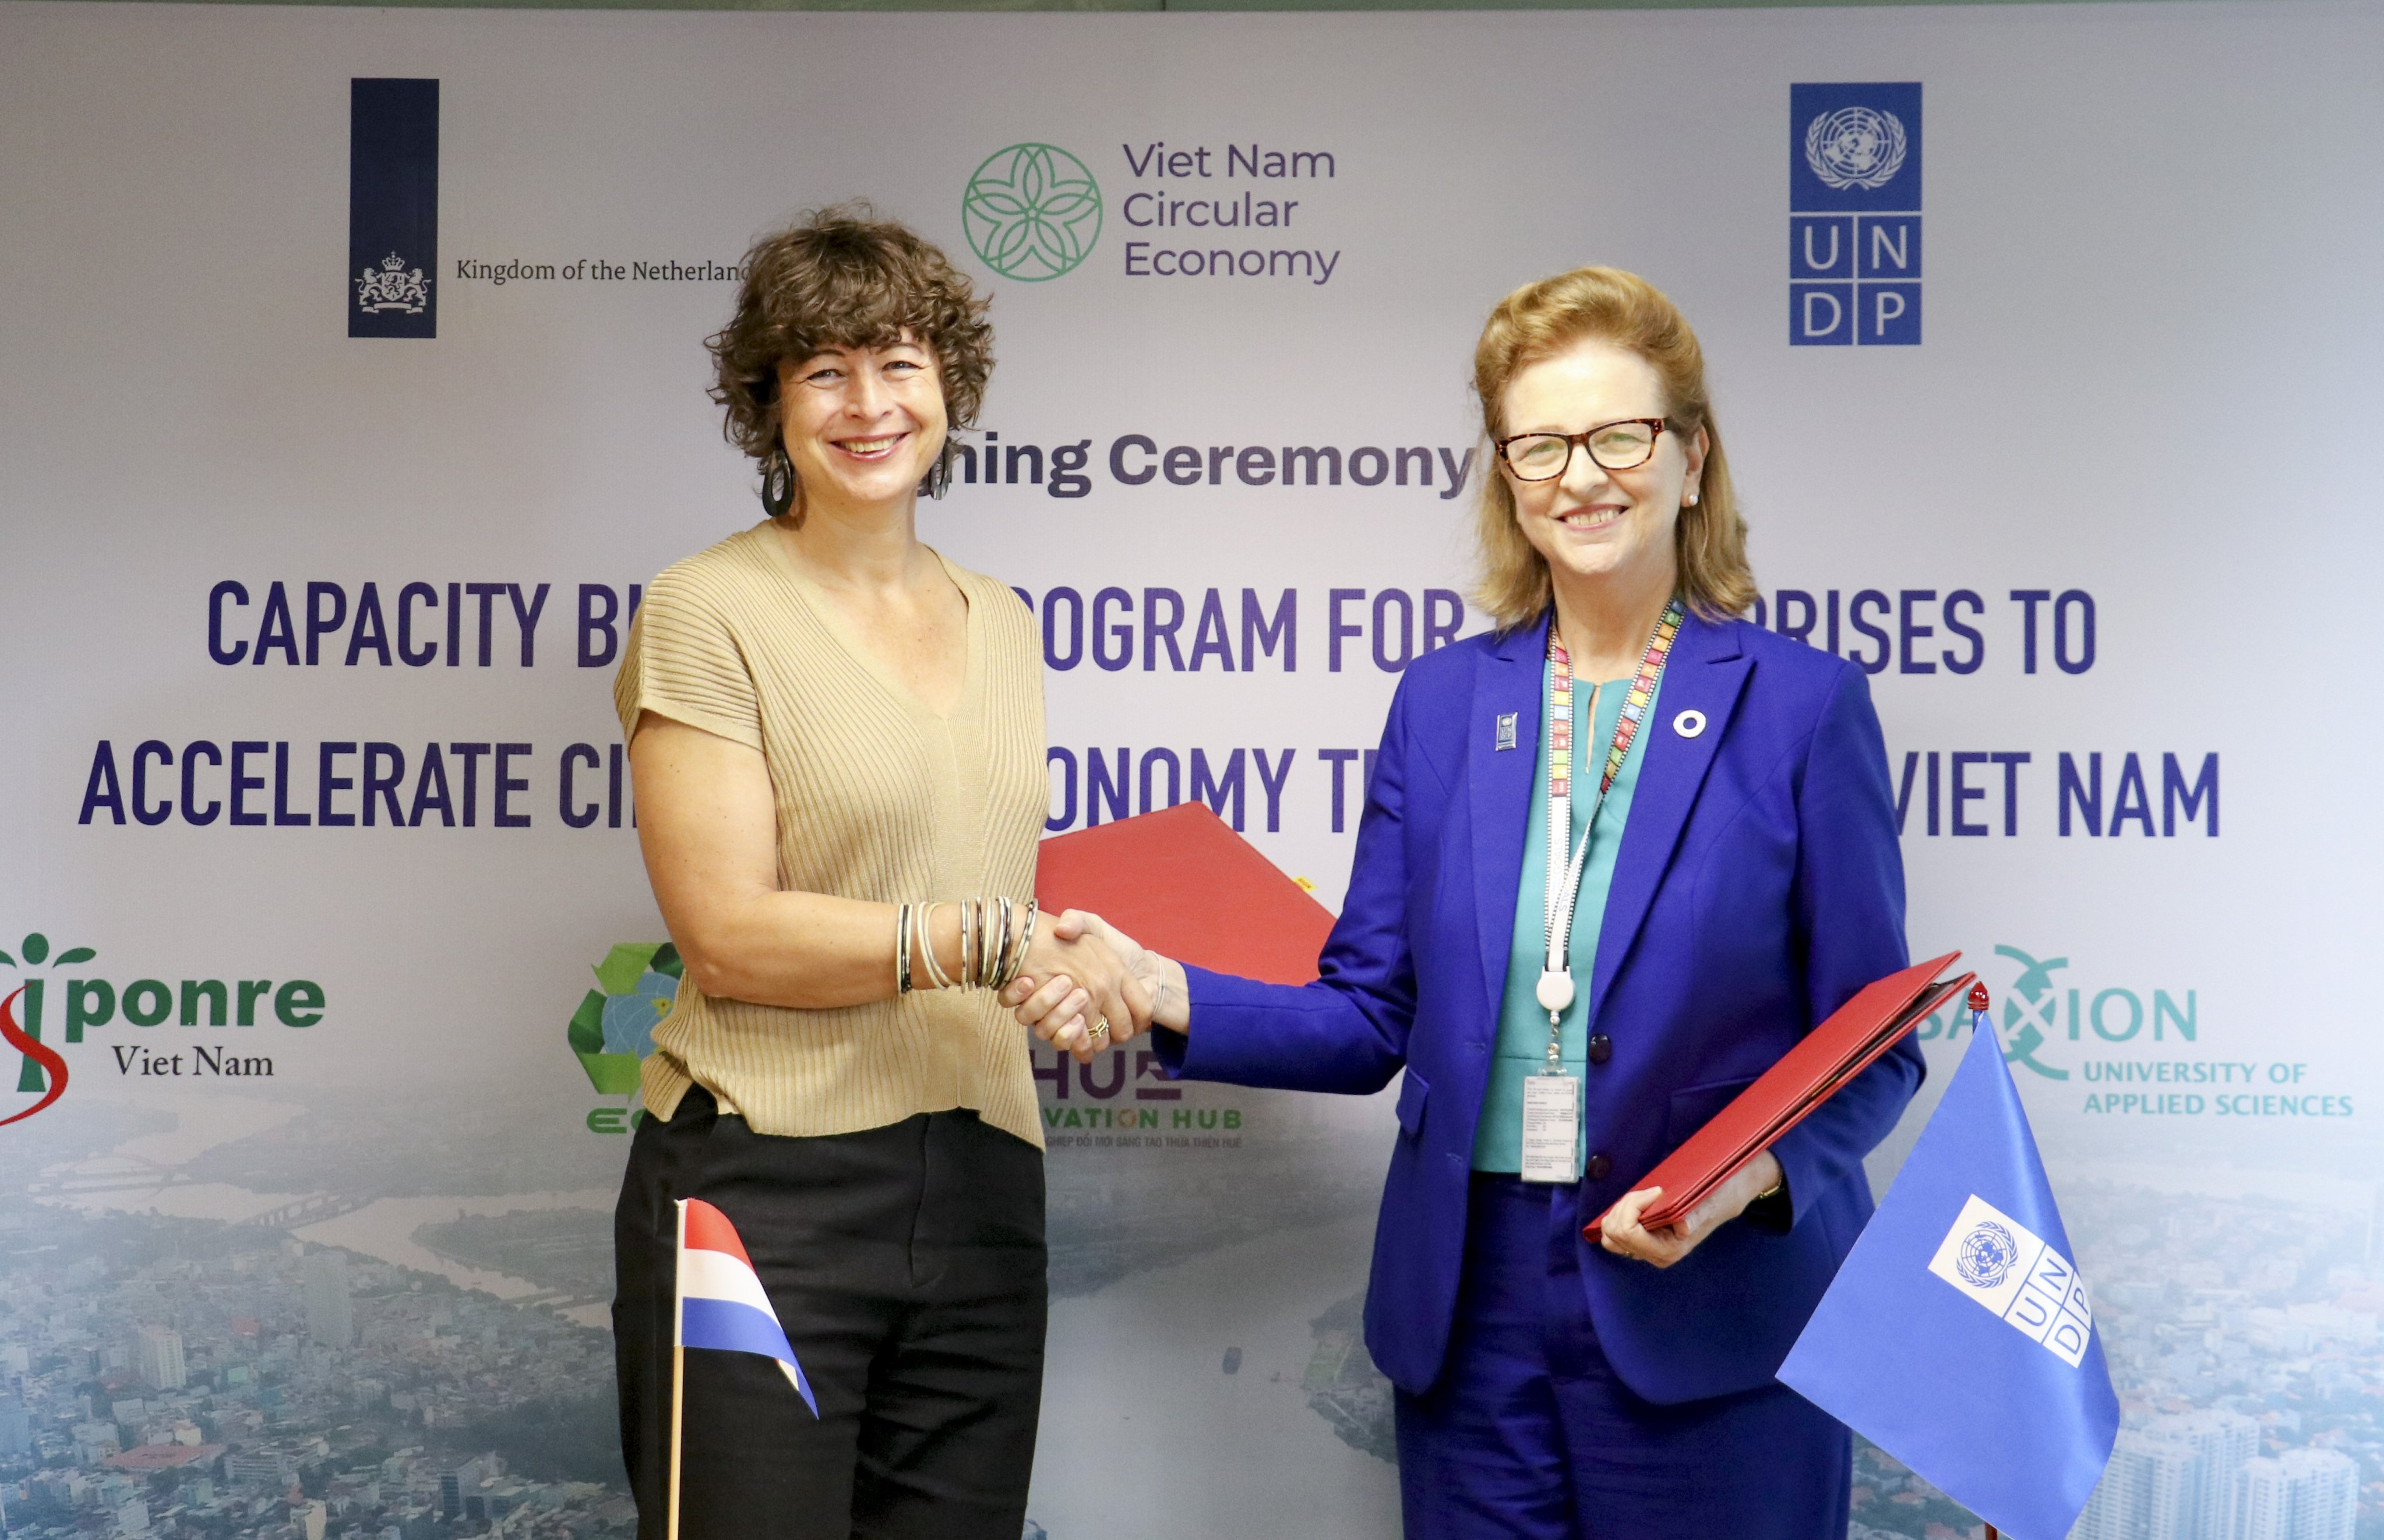 Bà Elsbeth Akkerman, Đại sứ Vương quốc Hà Lan tại Việt Nam (trái) và bà Caitlin Wiesen, Trưởng đại diện thường trú UNDP ký thỏa thuận hợp tác triển khai chương trình tăng cường năng lực về kinh tế tuần hoàn cho các doanh nghiệp.